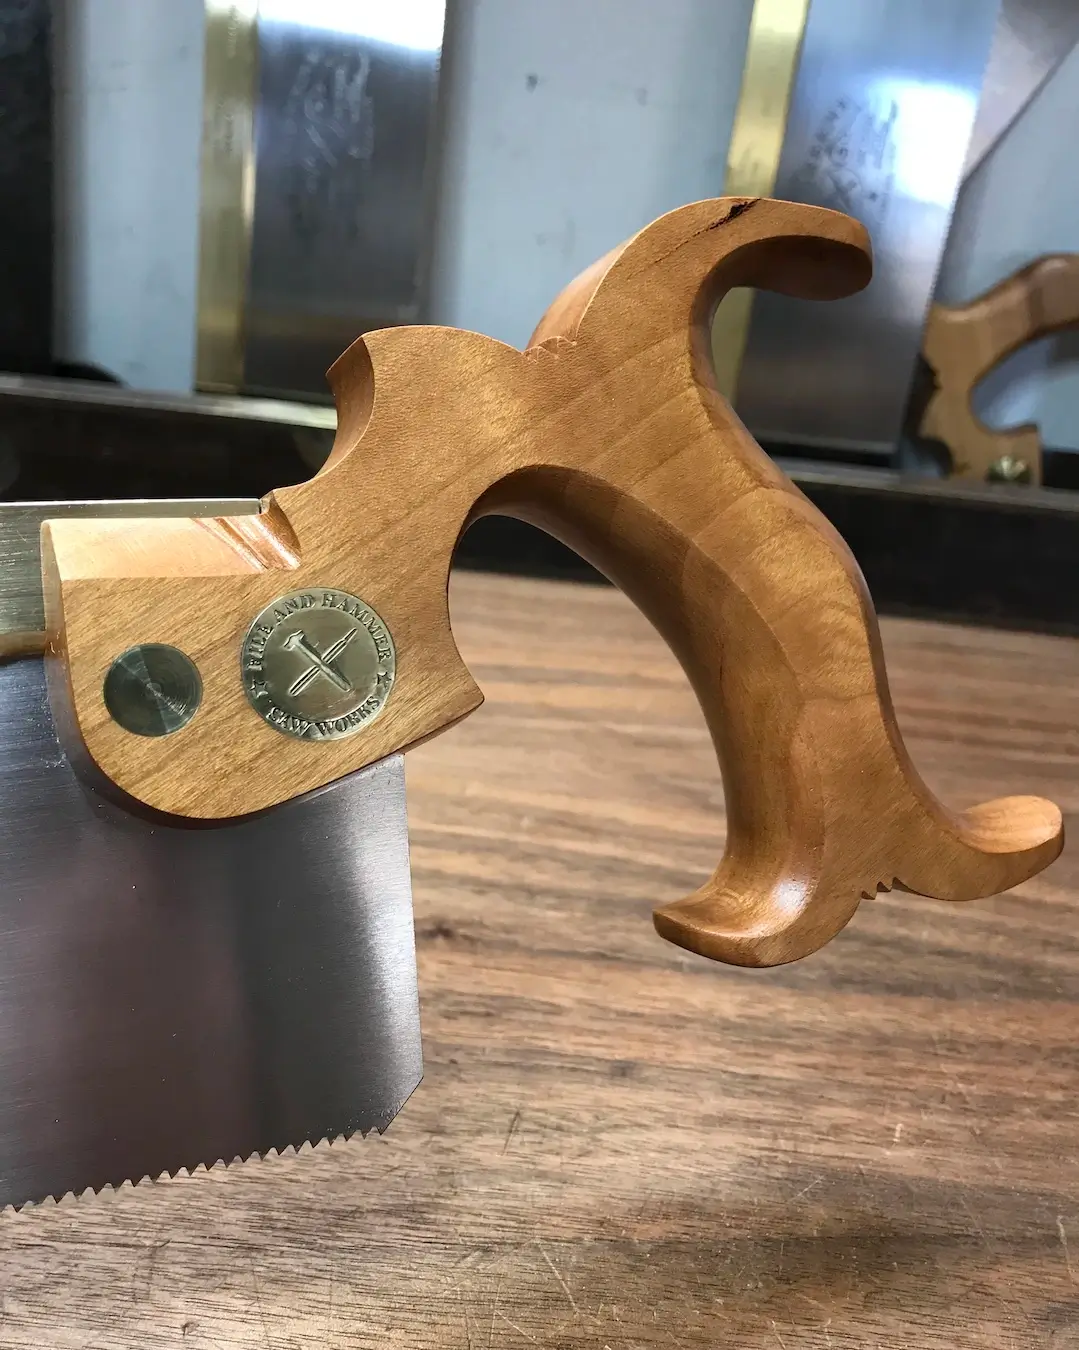 My standard open handle in cherry wood.